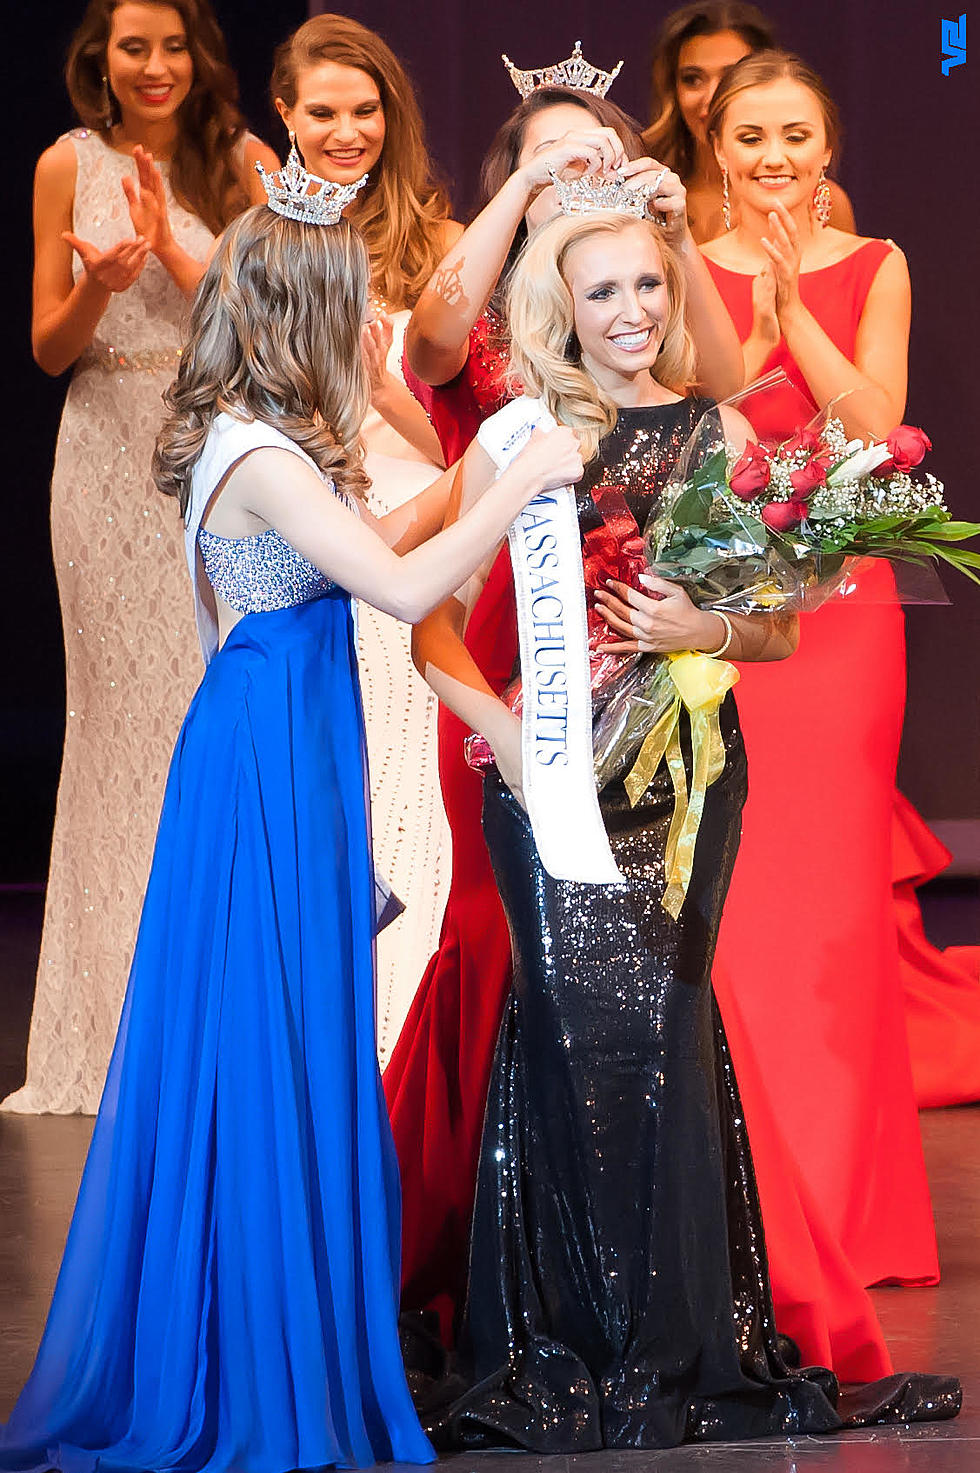 Rehoboth Native Is Crowned Miss Massachusetts 2016, 1st Runner Up Is From Mattapoisett